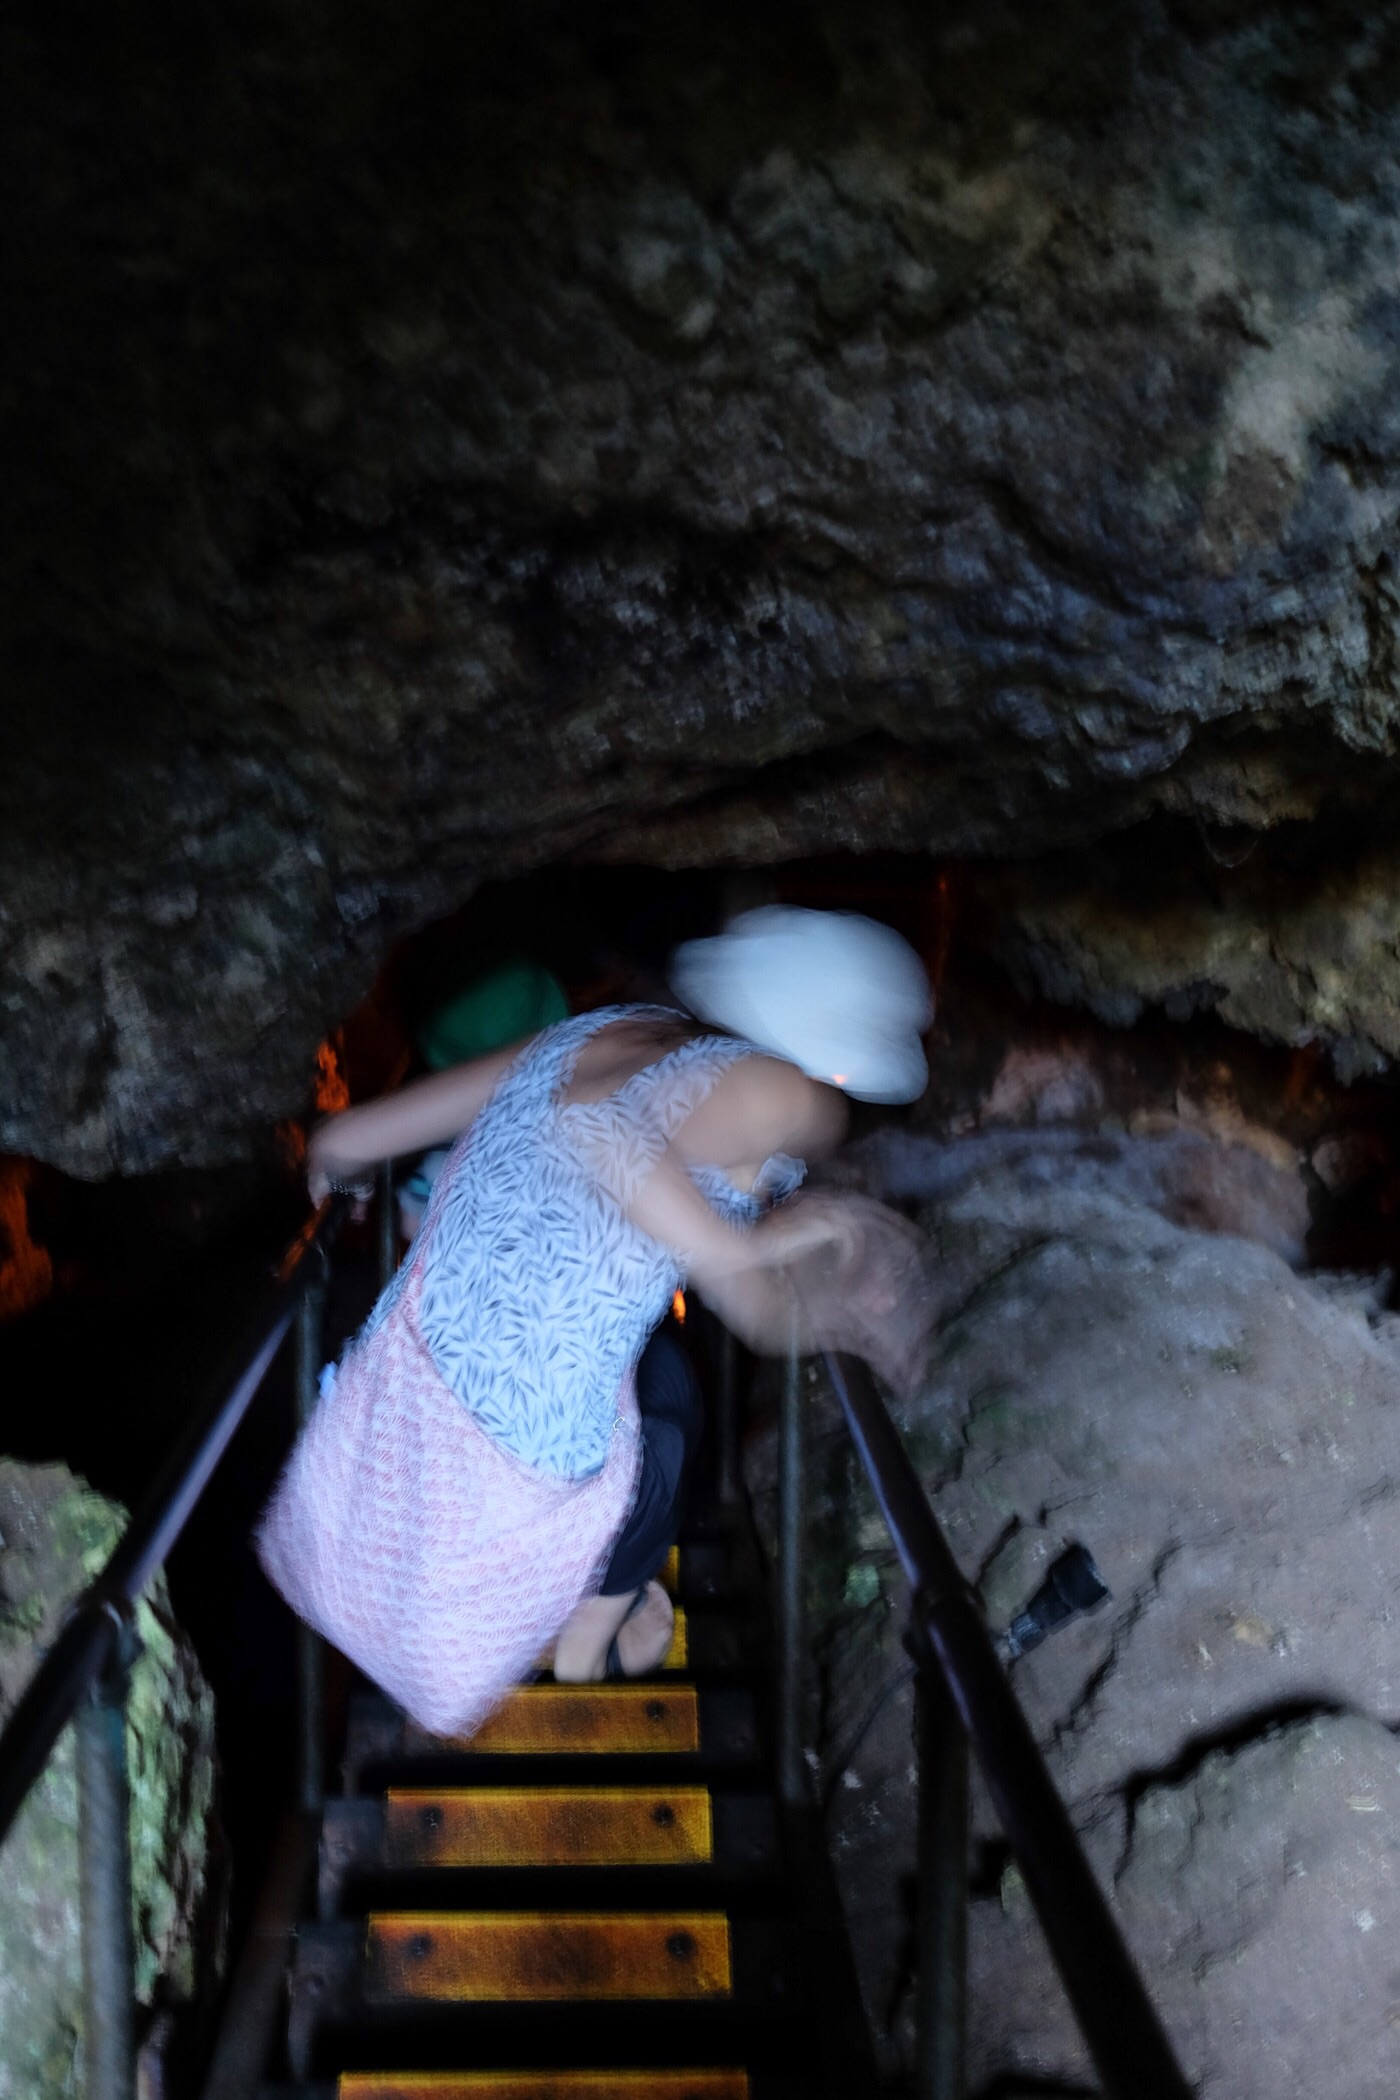 Descending into Lake cave — Western Australia